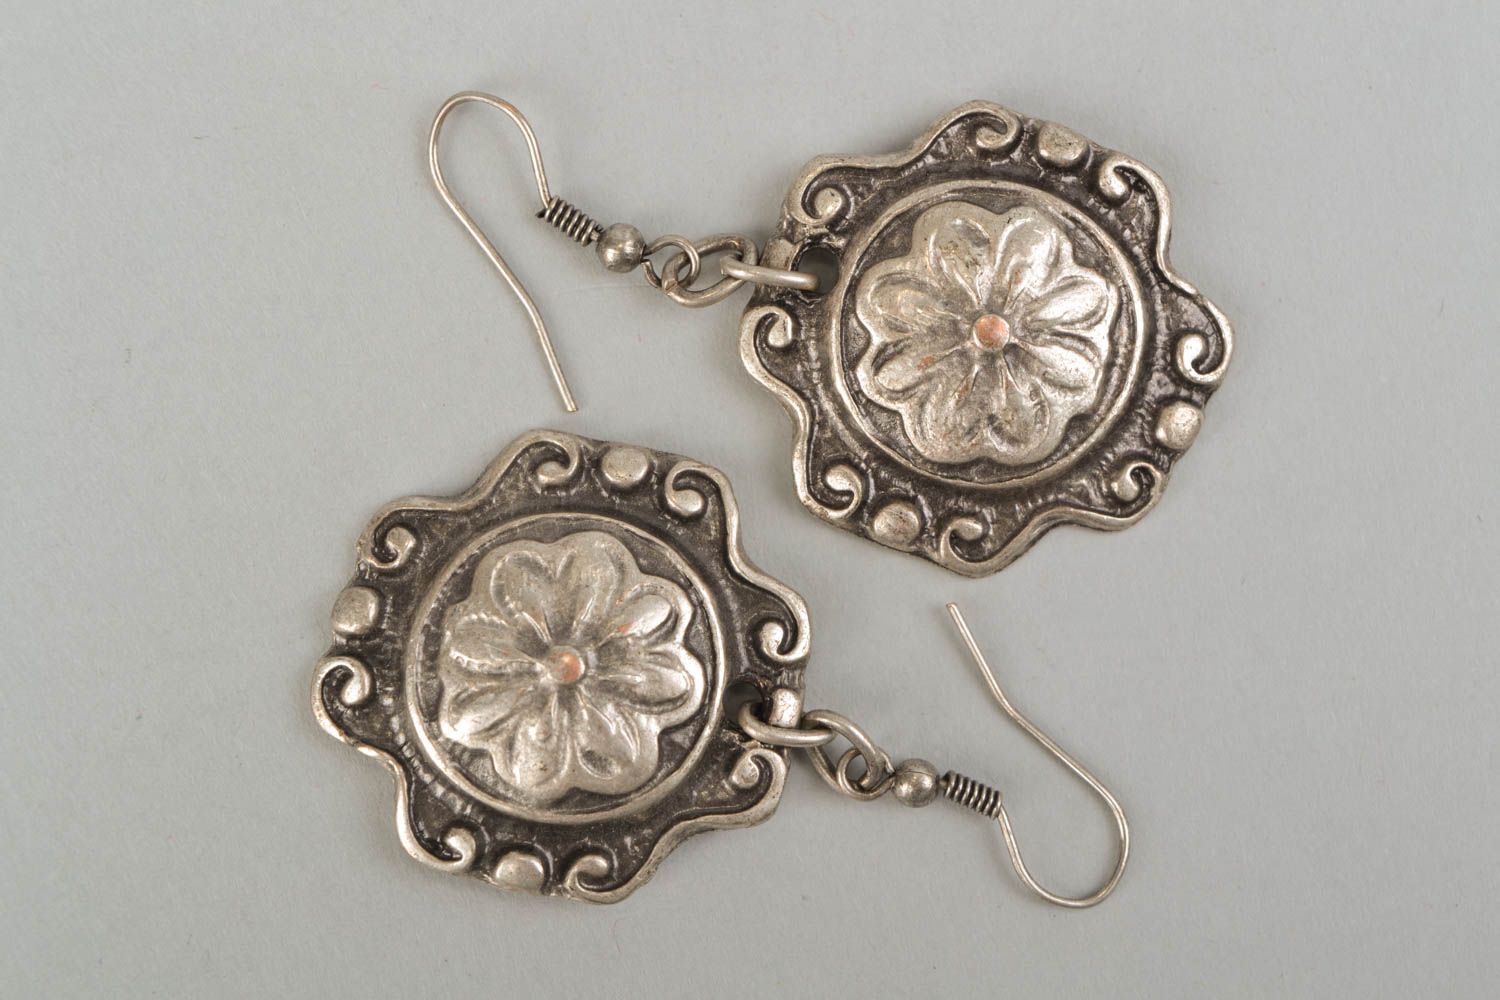 Unusual earrings made of hypoallergenic metal photo 3